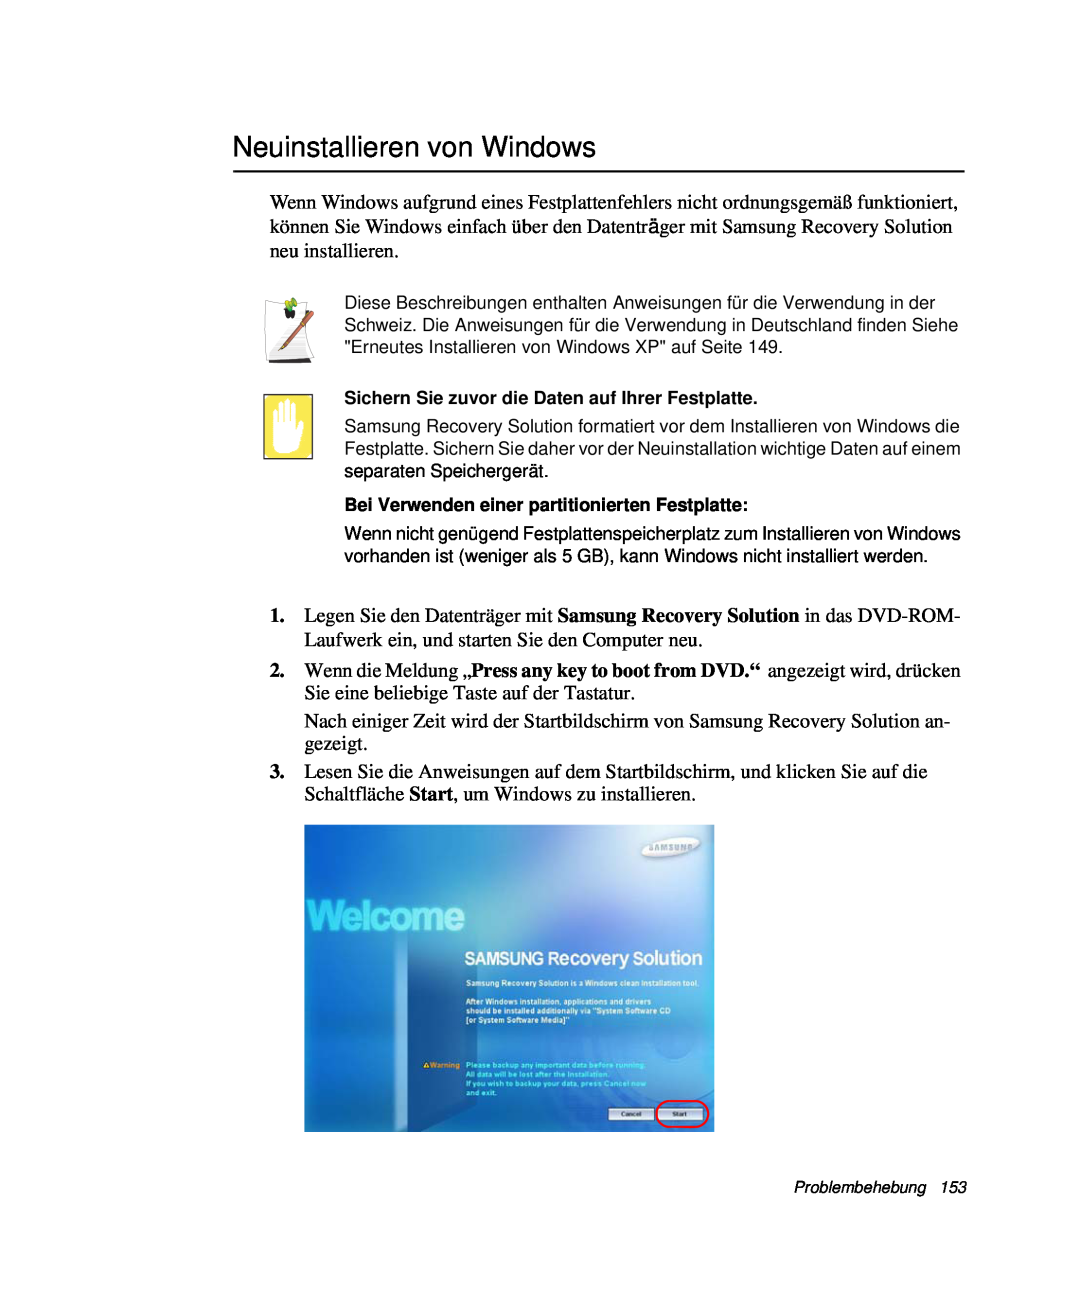 Samsung NP-R40K001/SEG, NP-R40FY0B/SEG manual Neuinstallieren von Windows, Sichern Sie zuvor die Daten auf Ihrer Festplatte 